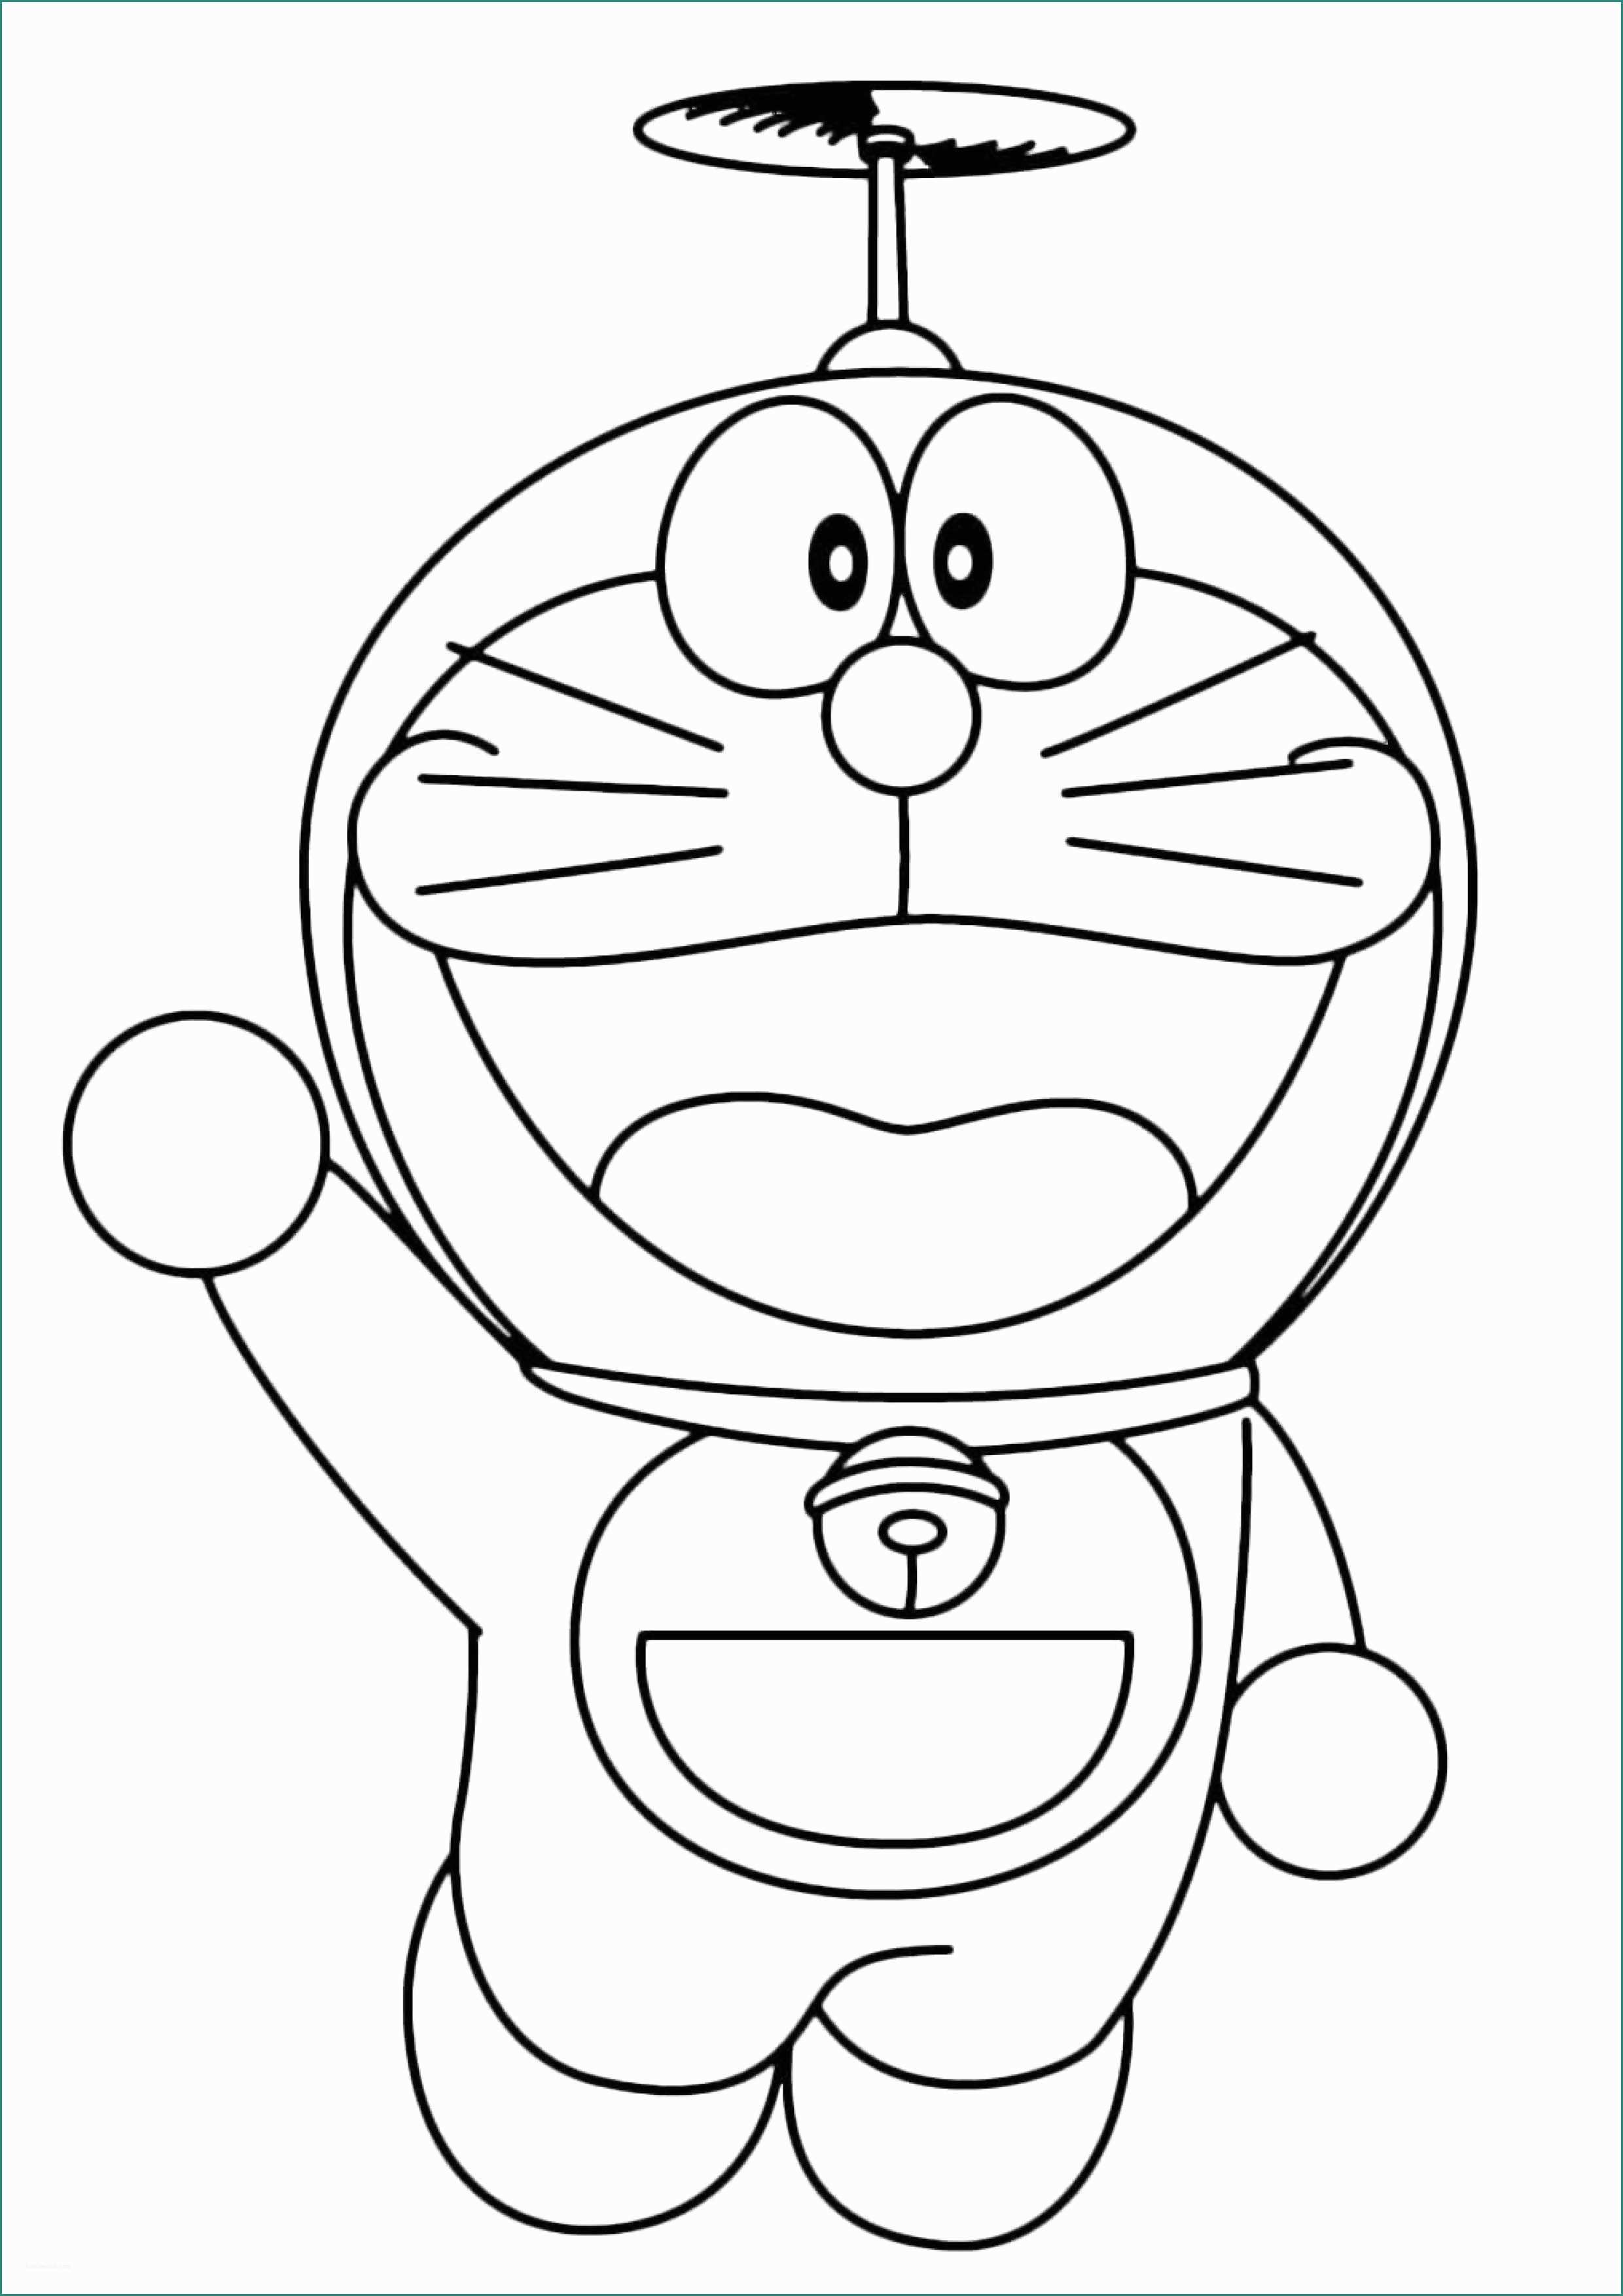 Giochi Di Doraimon E Impressionante Doraemon Disegni Da Colorare Per Bambini